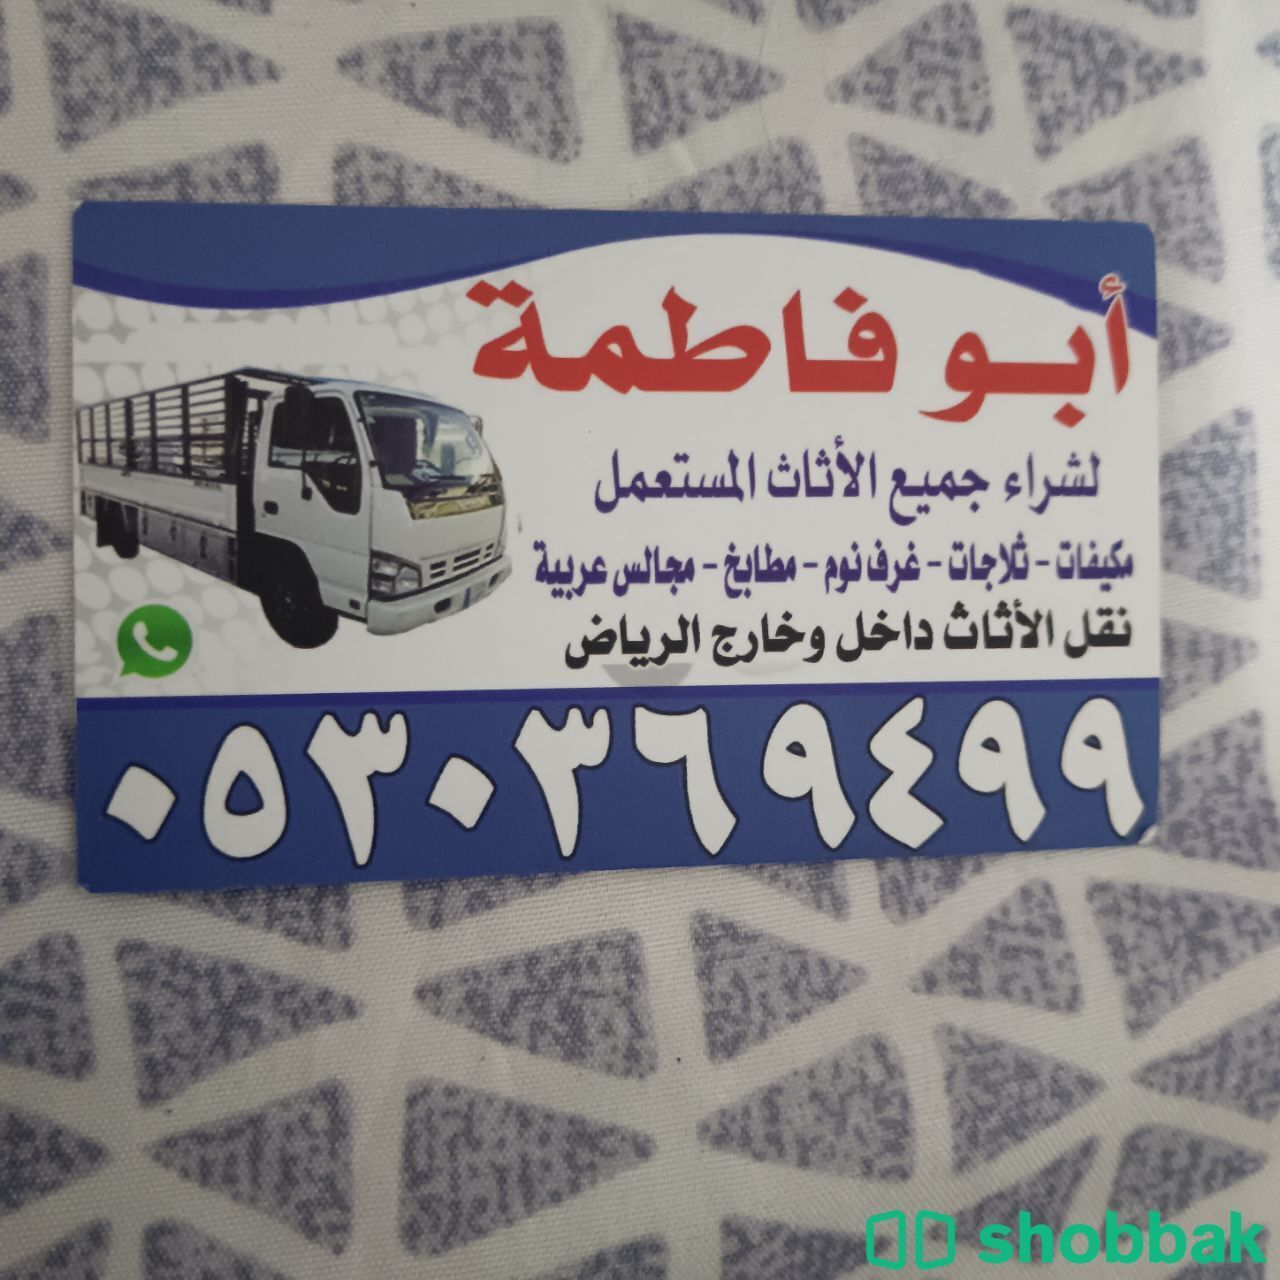 شراء أثاث مستعمل حي العريجاء 0530369499  Shobbak Saudi Arabia